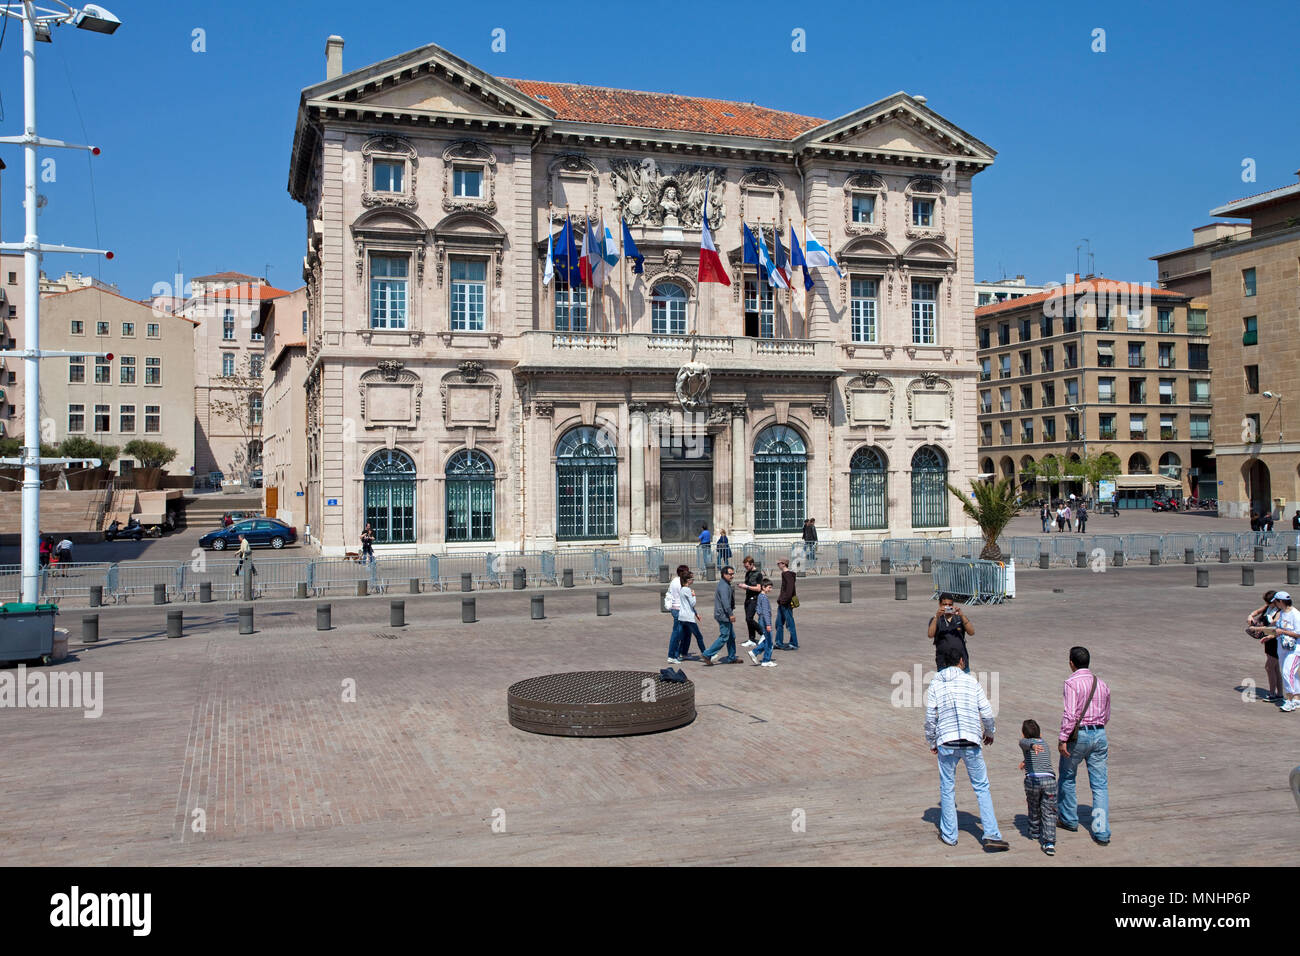 Das alte Rathaus am Hafen, Vieux Port, Marseille, Bouches-du-Rhône der Region Provence-Alpes-Côte d'Azur, Südfrankreich, Frankreich, Europa Stockfoto